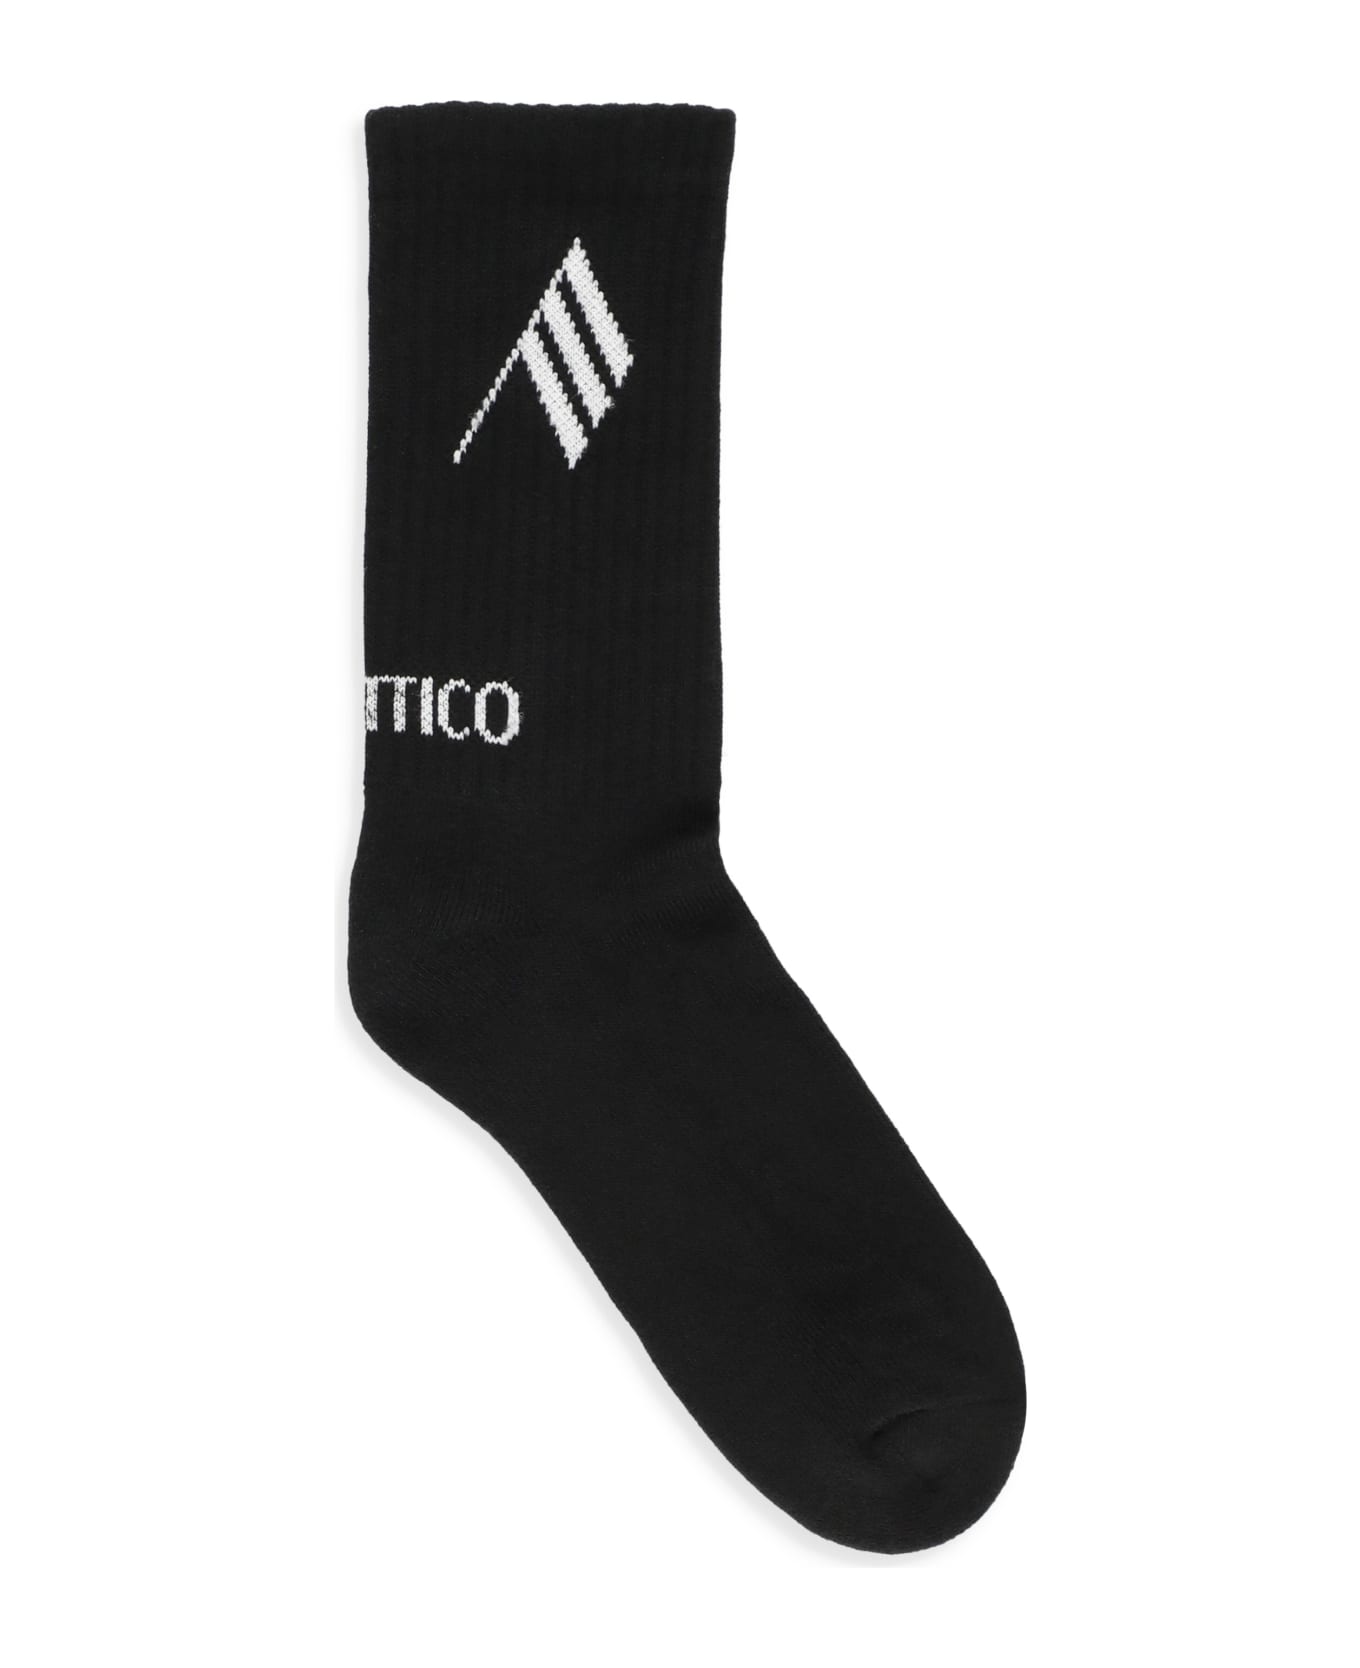 The Attico Cotton Socks - Black